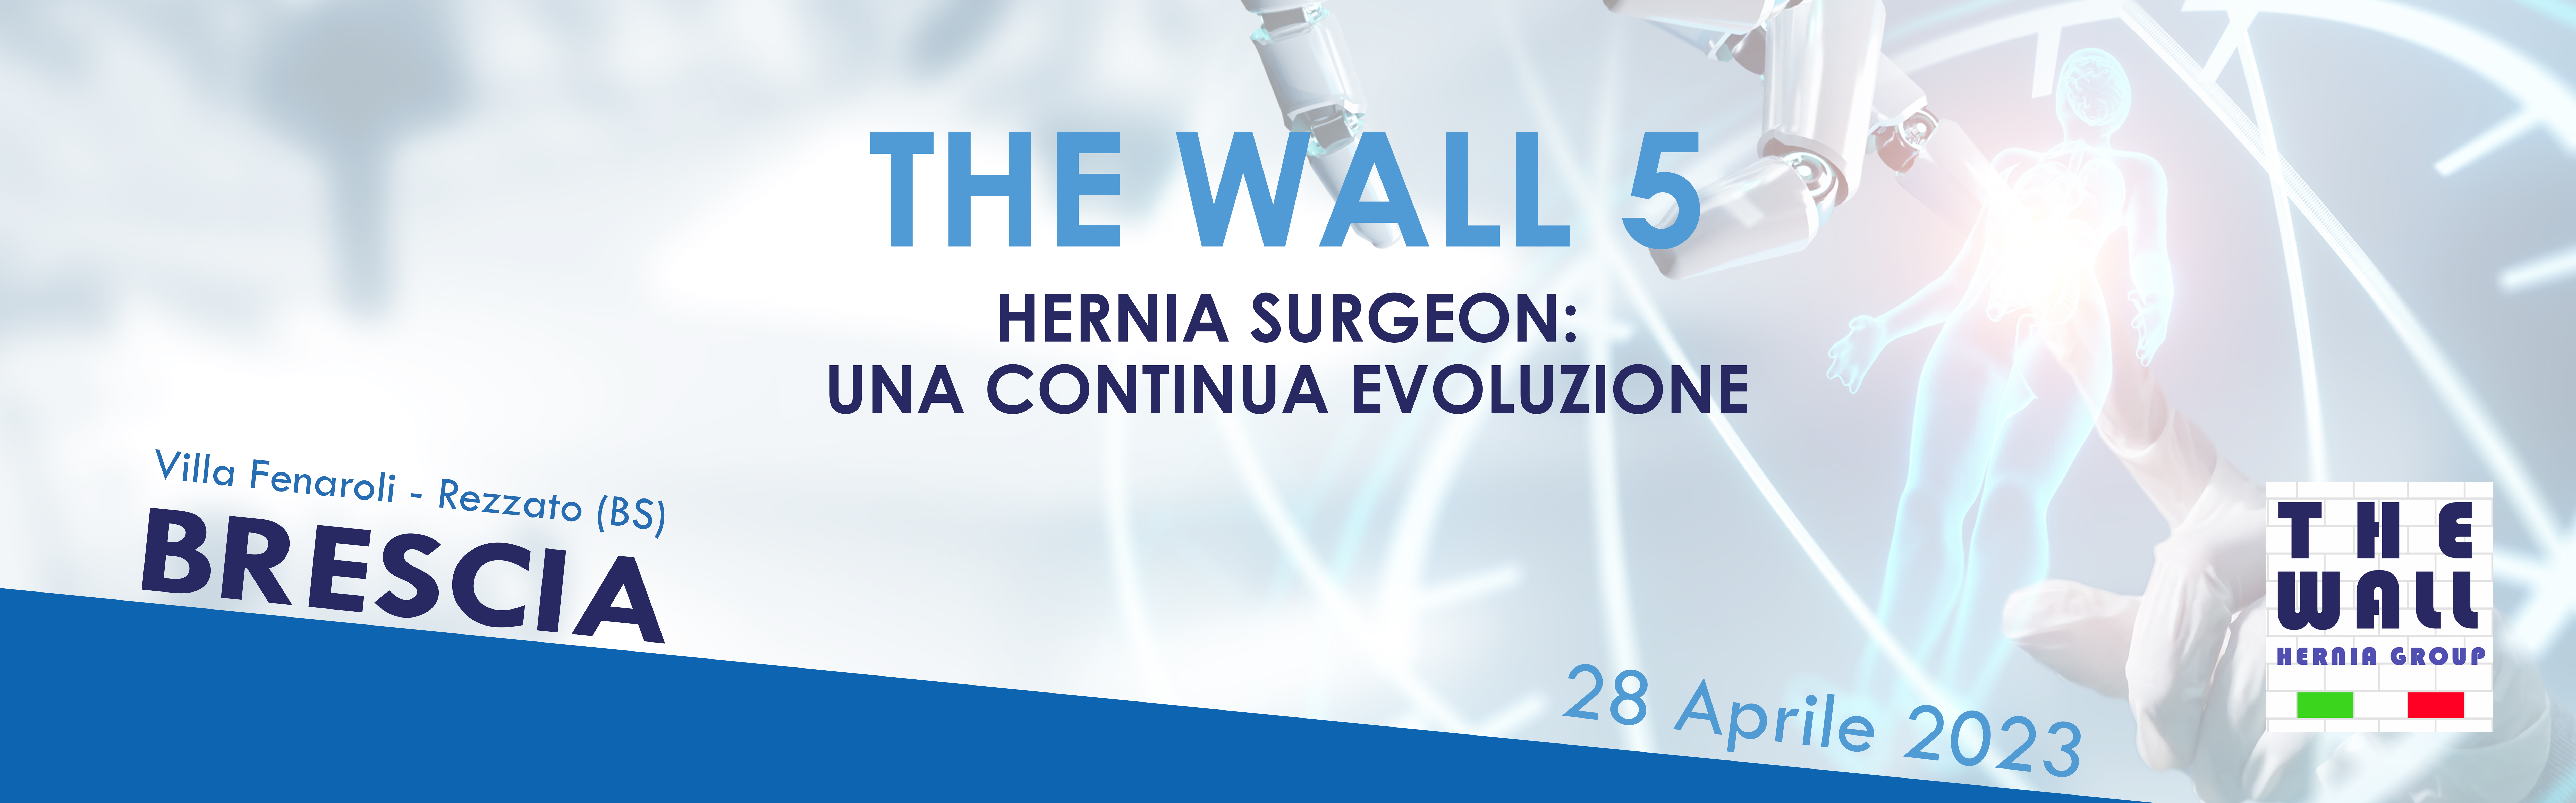 The Wall 5 - Hernia Surgeon una Continua Evoluzione